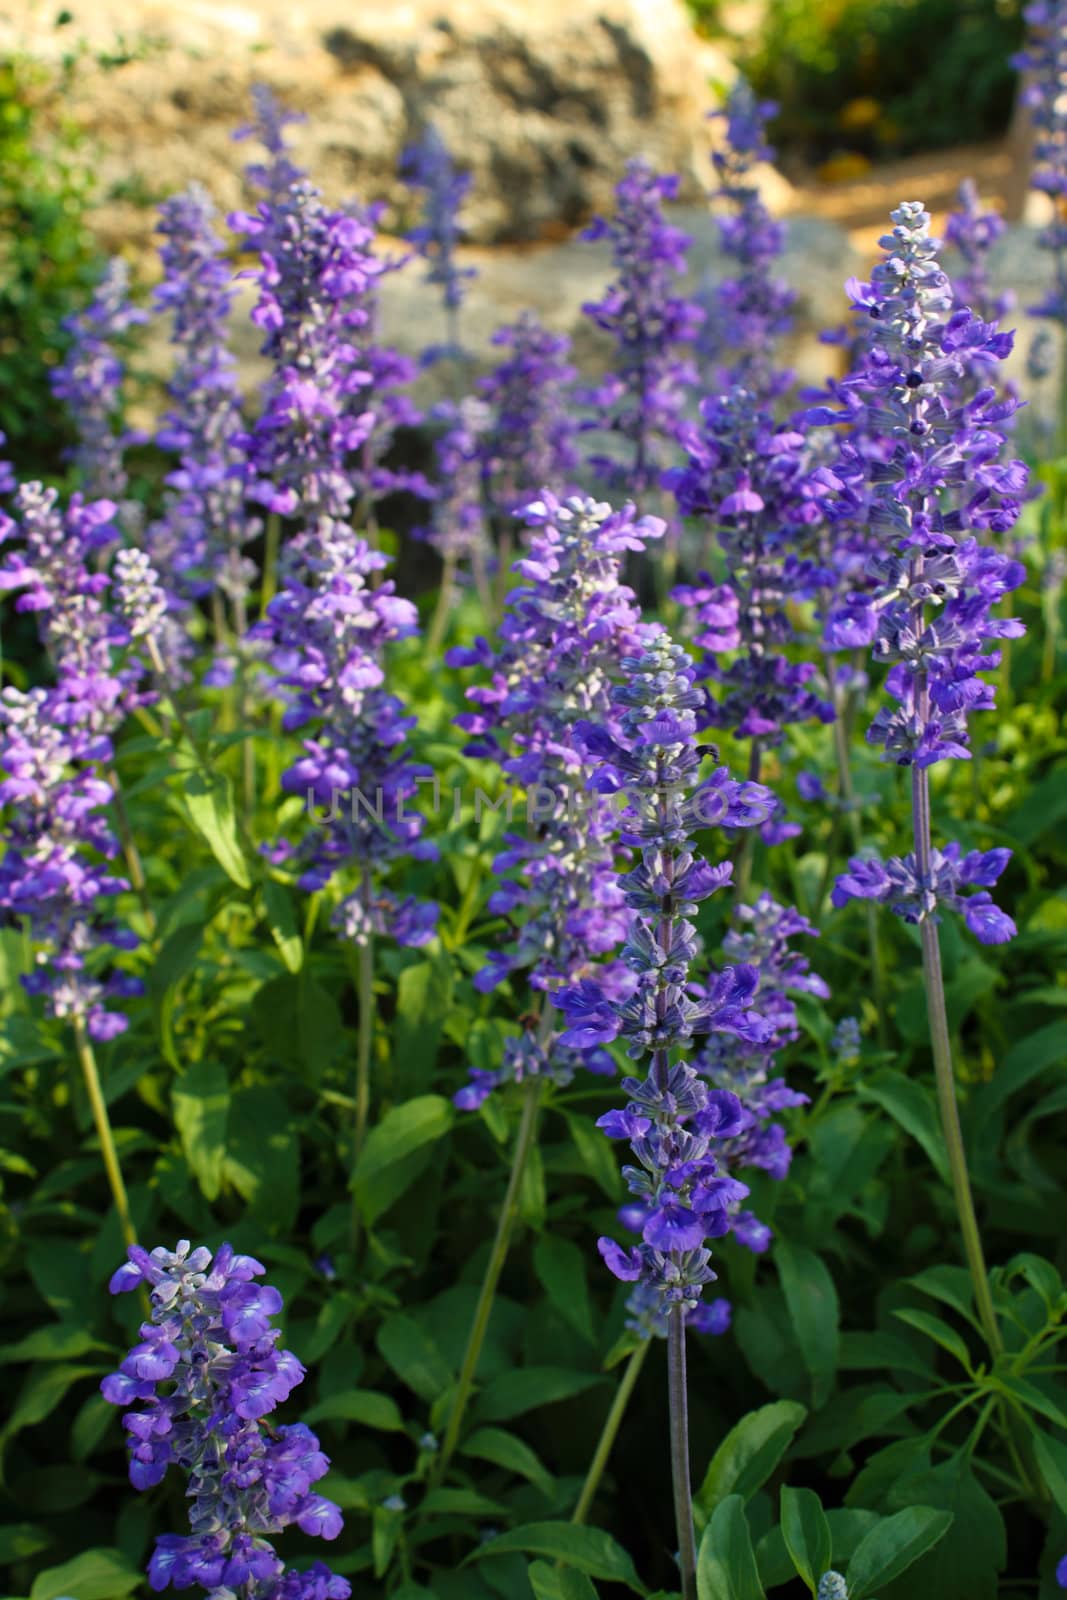 Purple flowers by rawich06